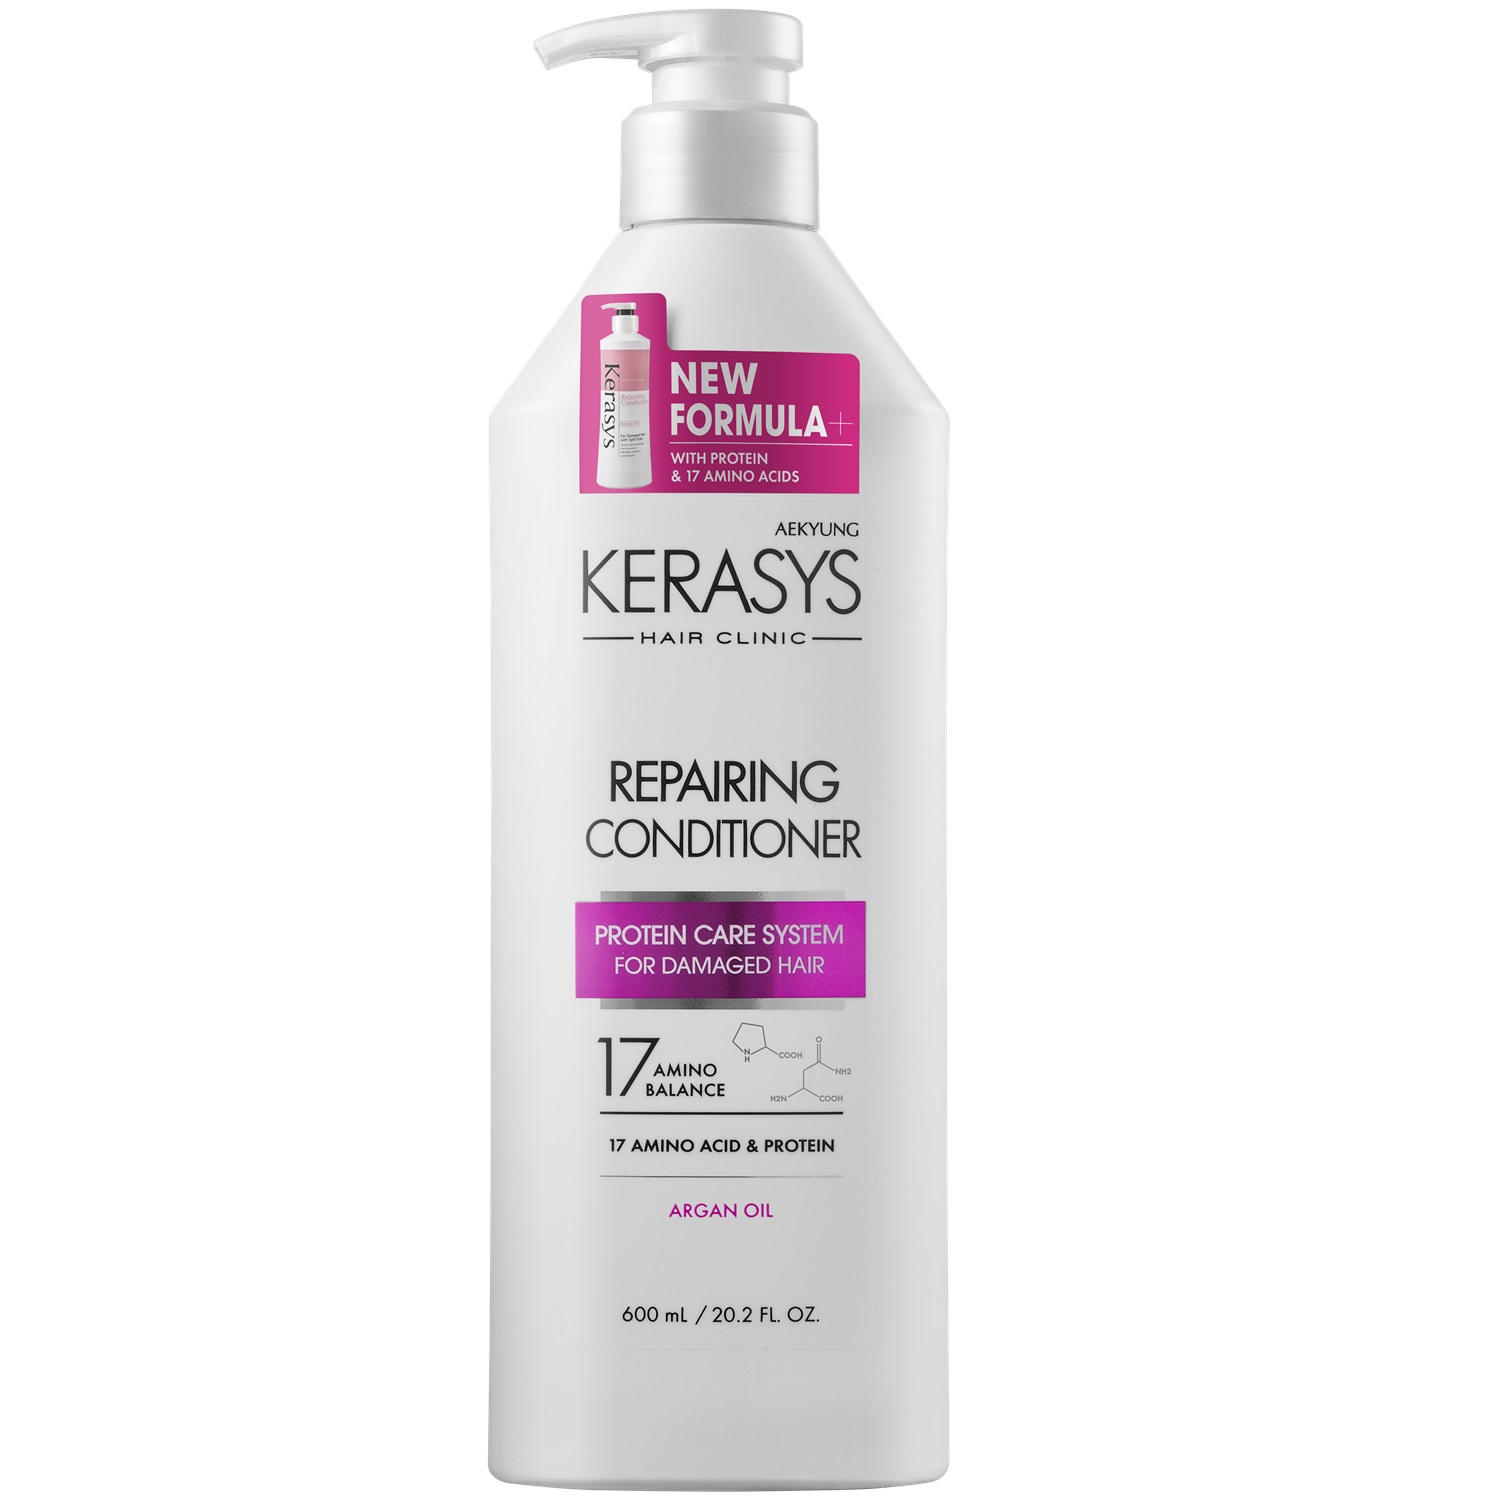 Kerasys Кондиционер для волос восстанавливающий, 600 мл (Kerasys, Hair Clinic) цена и фото